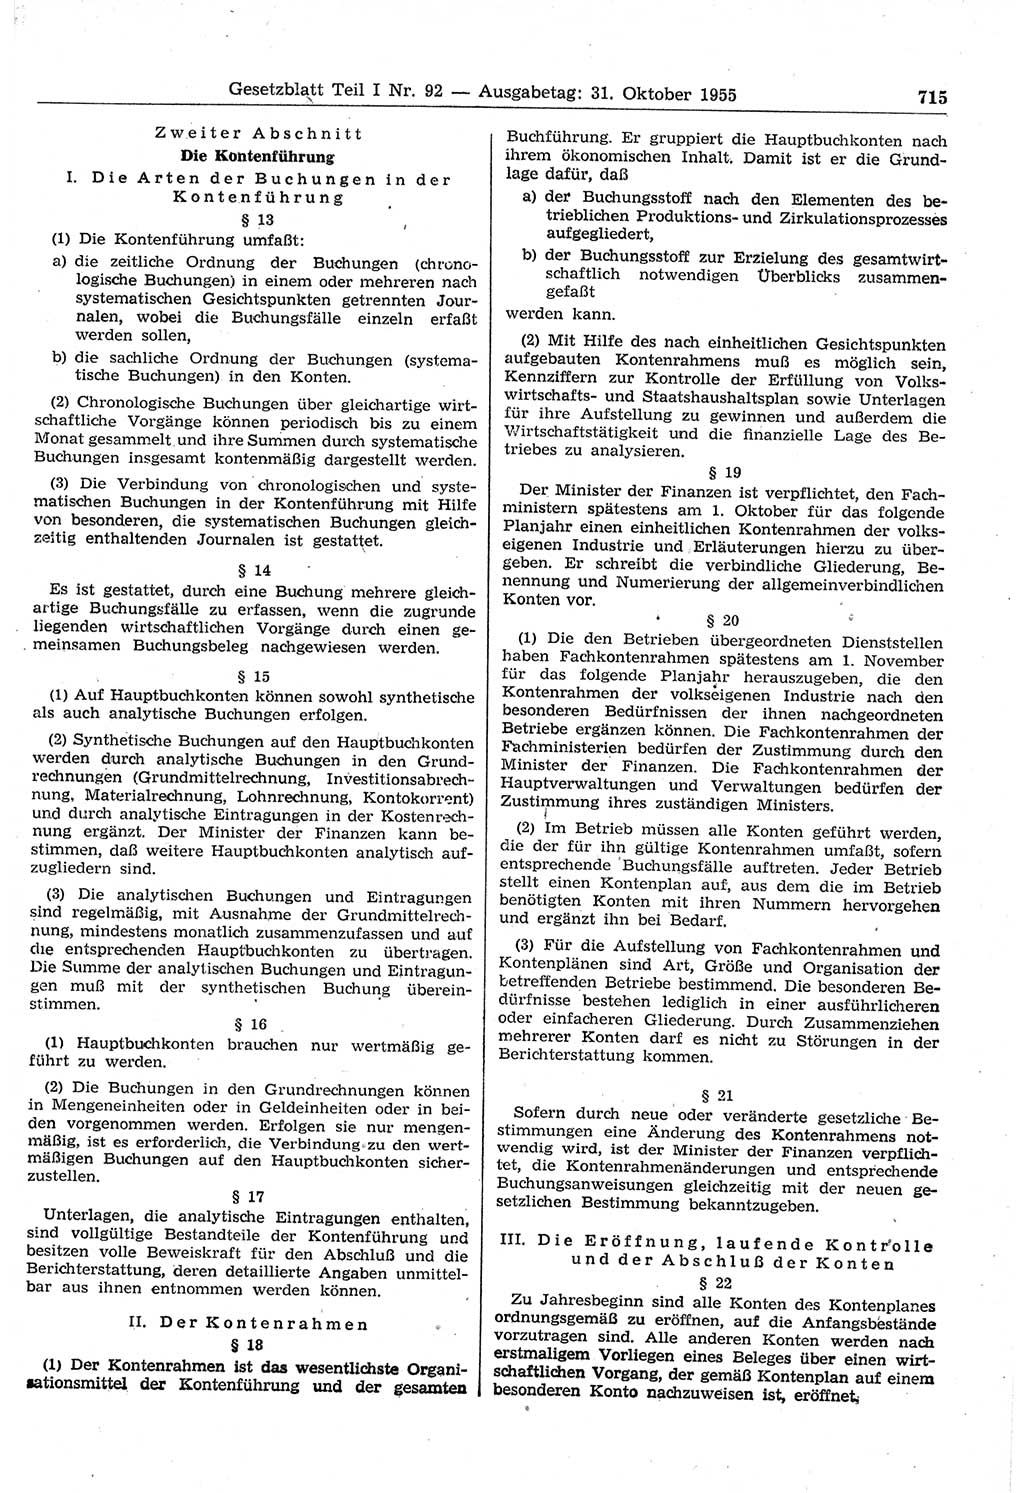 Gesetzblatt (GBl.) der Deutschen Demokratischen Republik (DDR) Teil Ⅰ 1955, Seite 715 (GBl. DDR Ⅰ 1955, S. 715)